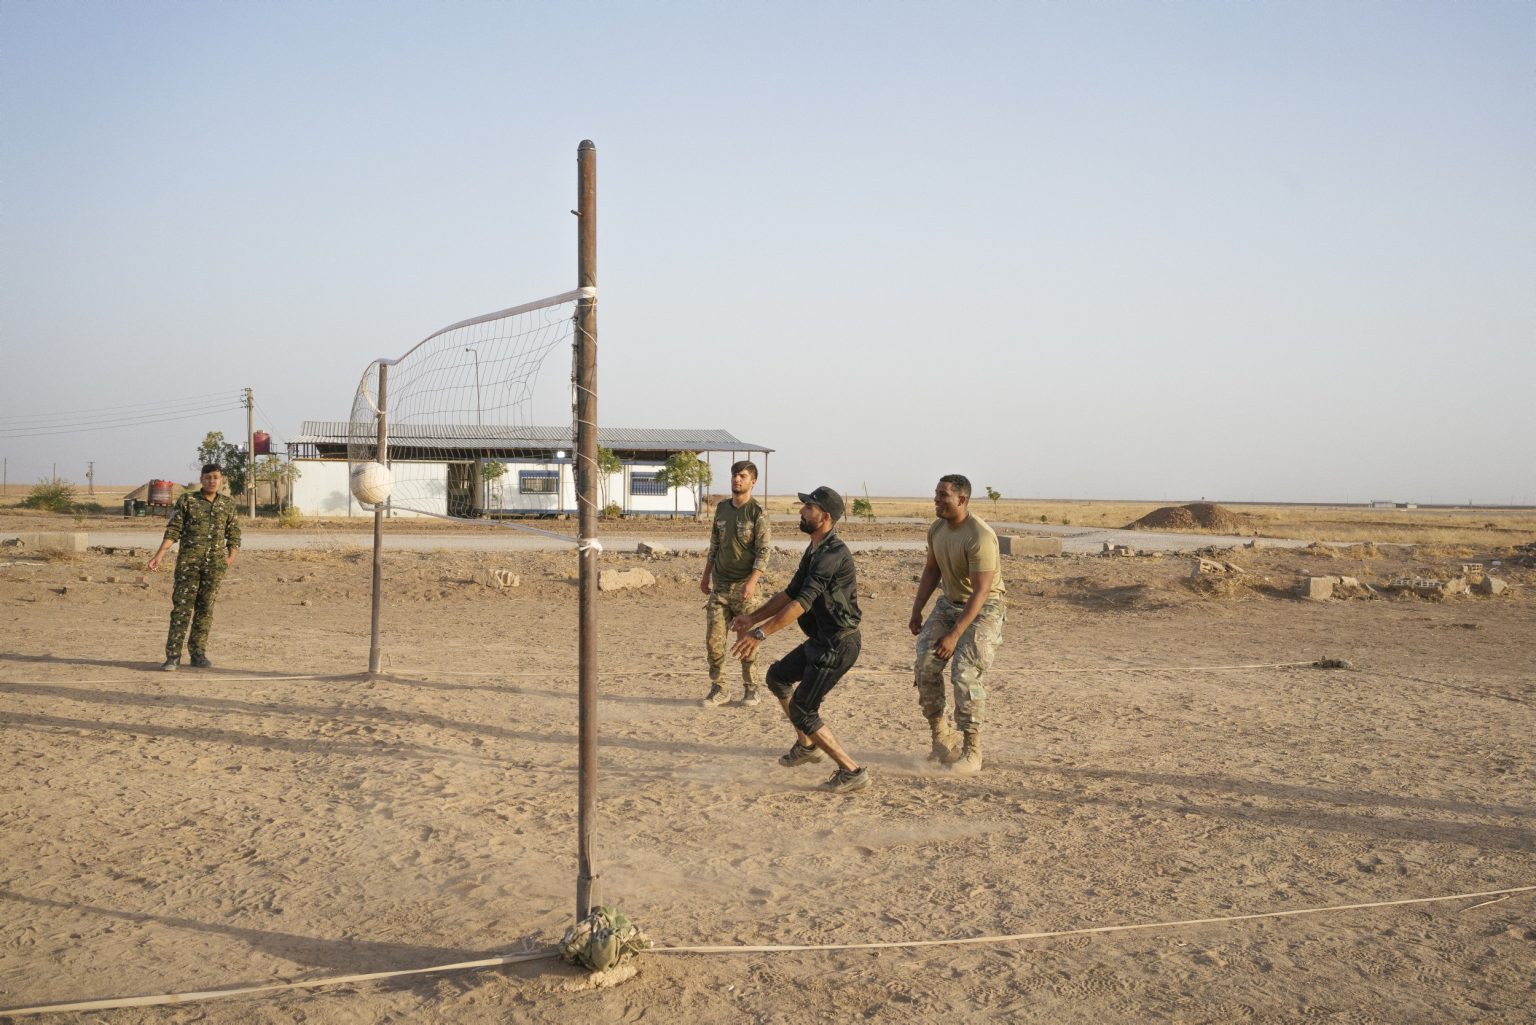 SYRIA. August 24, 2021 - Members of the Kurdish-led Syrian Democratic Forces (SDF), and a U.S. Army soldier, play volleyball inside a remote U.S. Army combat outpost in northeastern Syria, known as RLZ.

SIRIA. 24 agosto 2021 - Membri delle Forze Democratiche Siriane (SDF) e soldati dell'esercito americano, giocano a pallavolo all'interno di un avamposto dell'esercito americano nel nord-est della Siria, noto come RLZ.